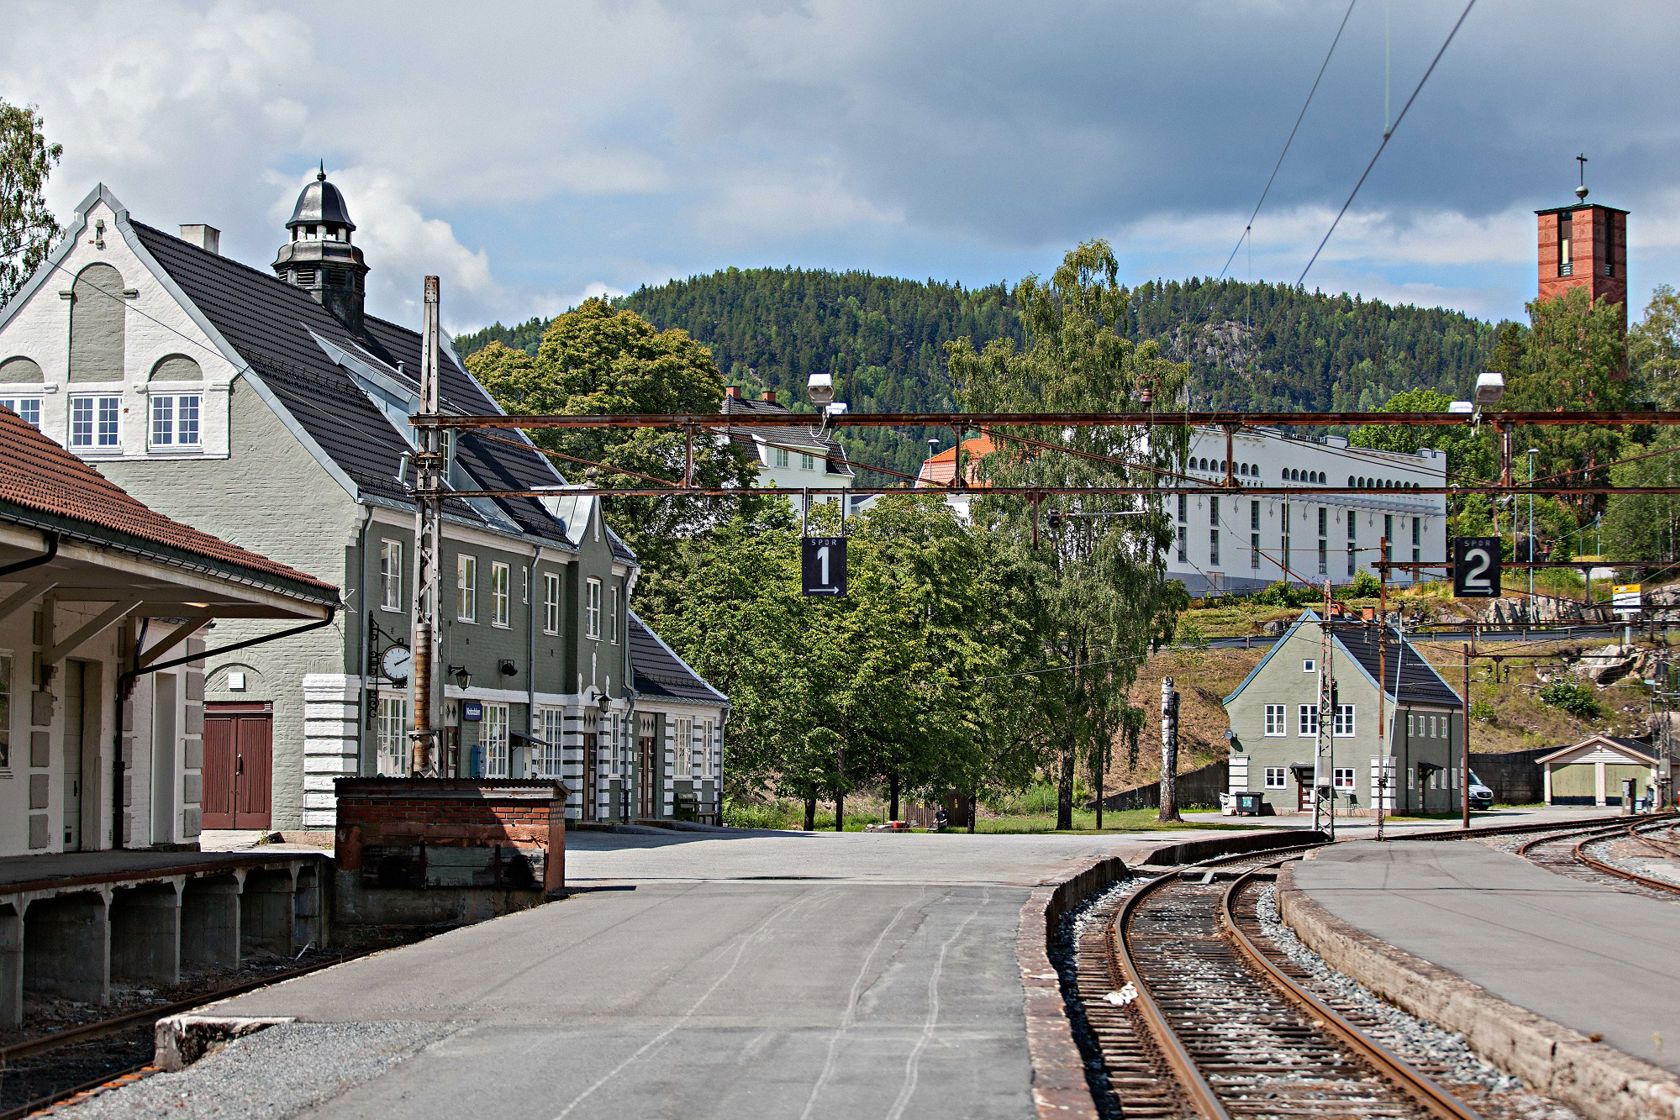 jernbaneplattform og stasjon i mur på sommerstid